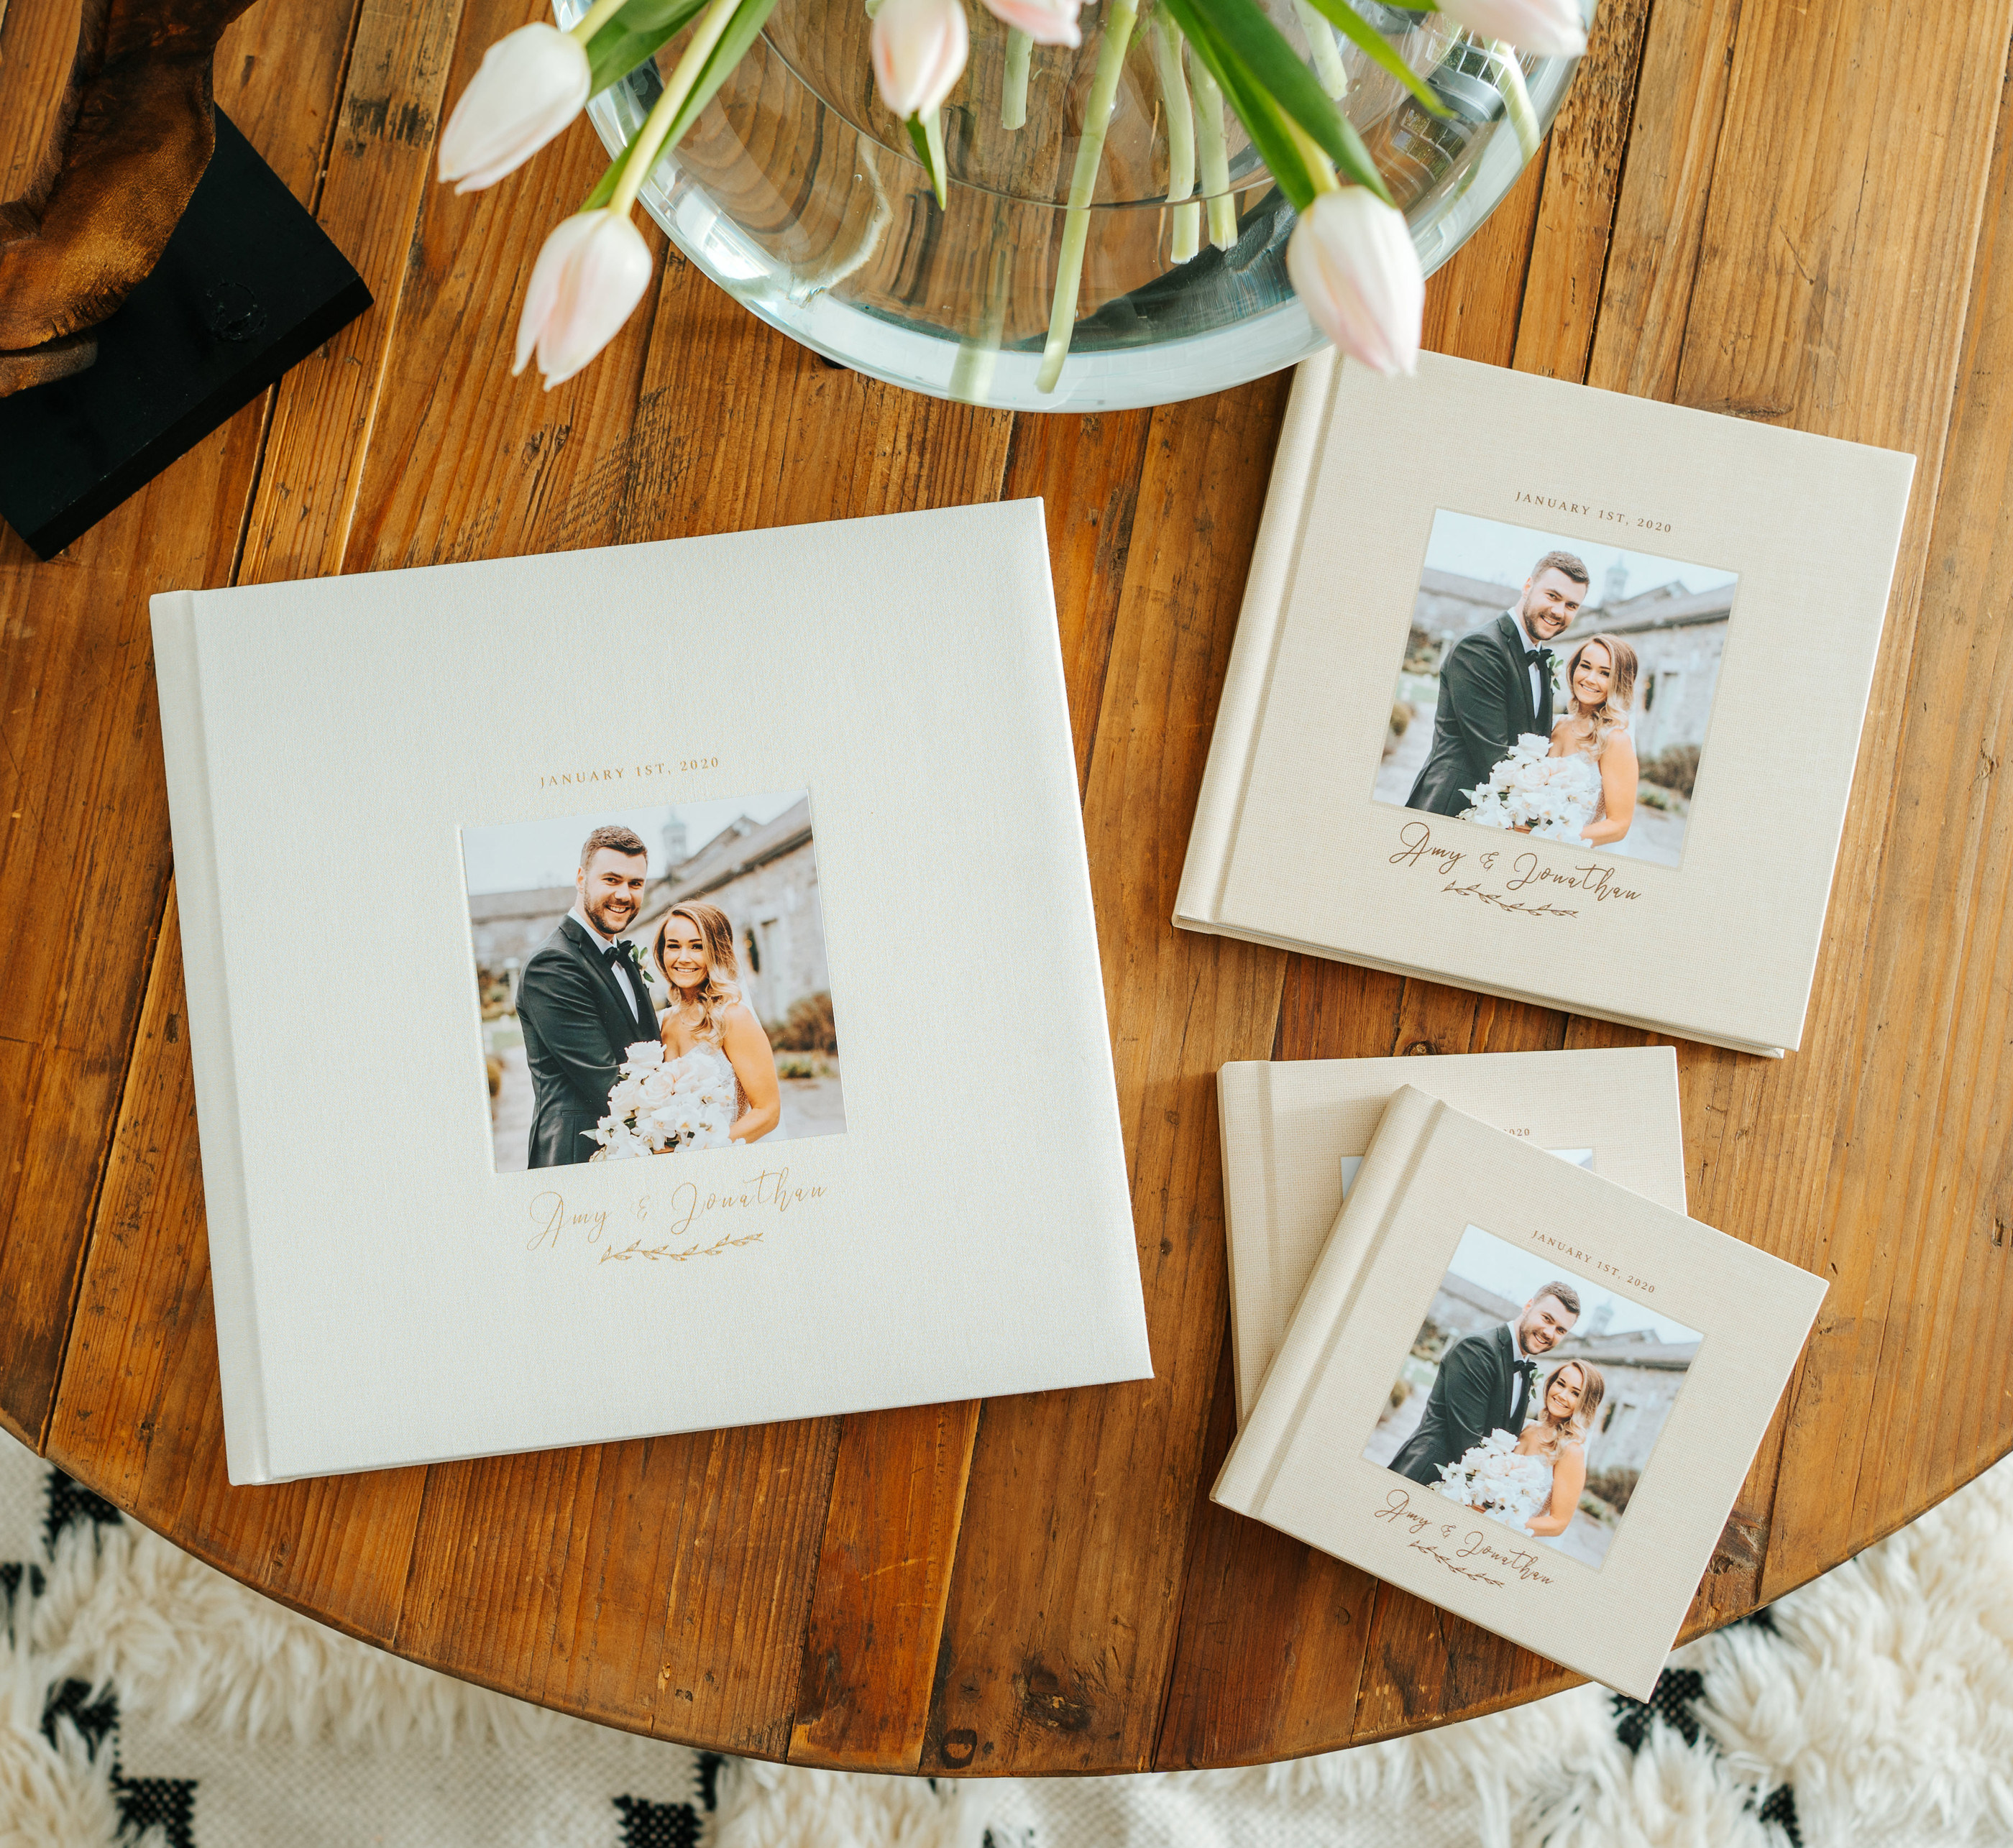 Smaller parent copies of wedding photo album